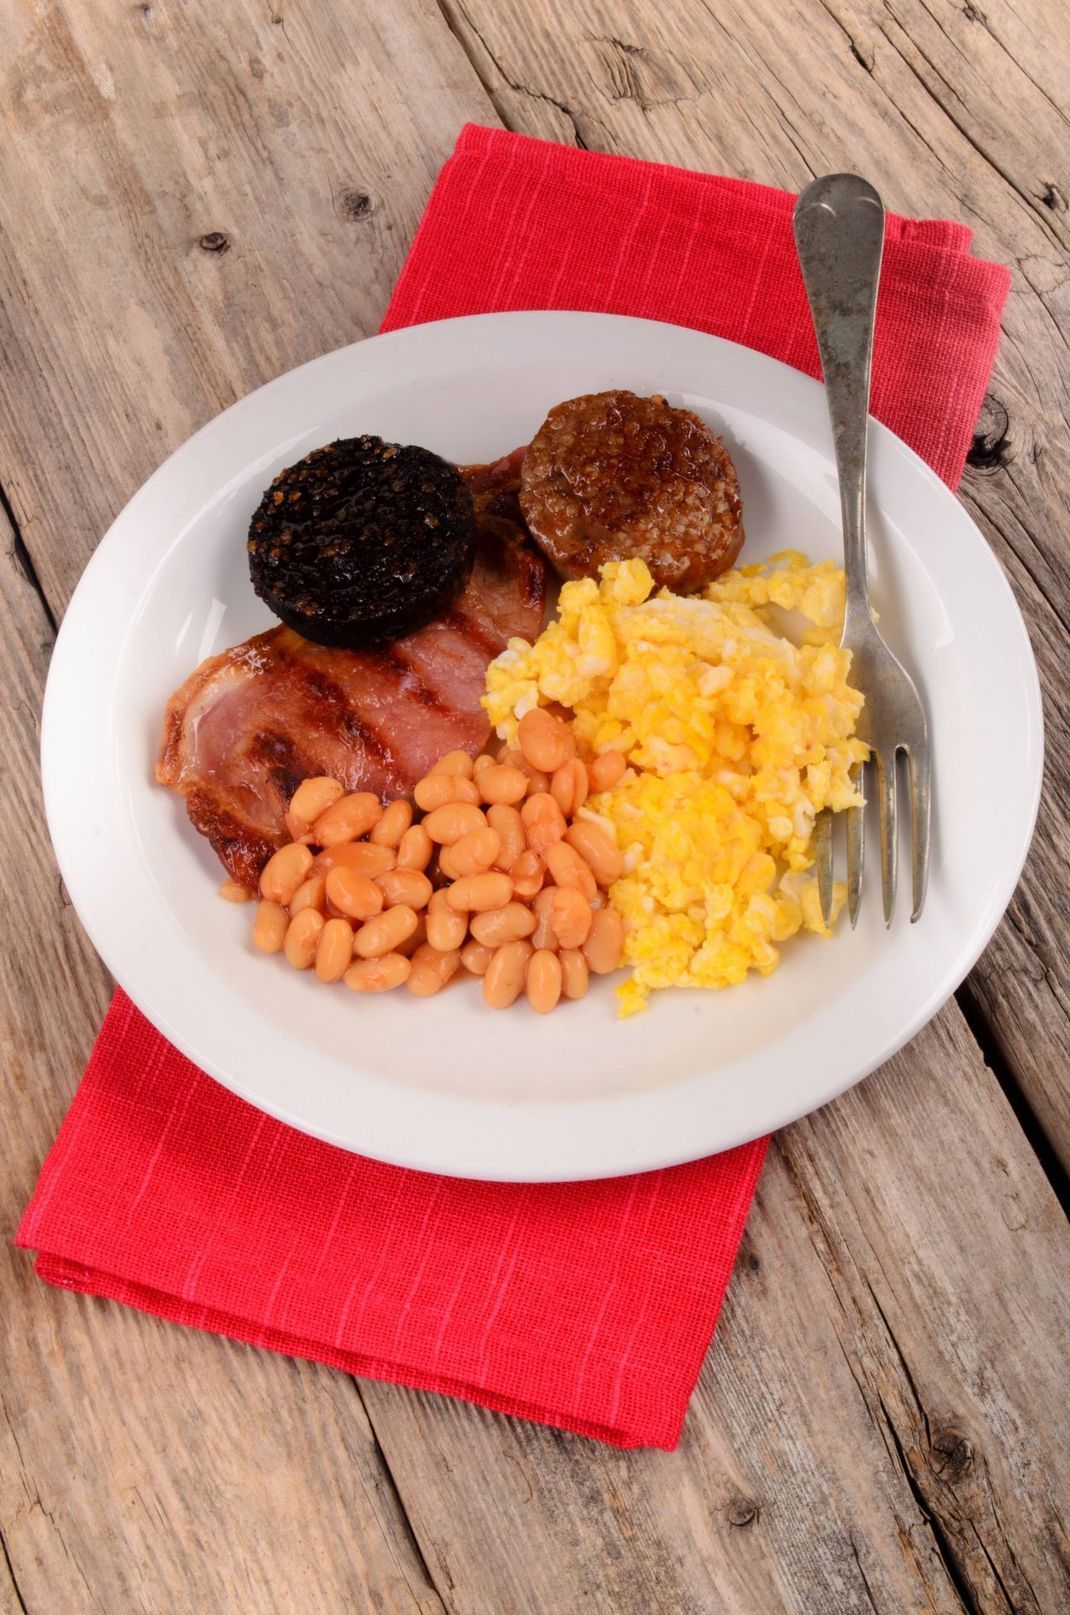 Full Englisch Breakfast: "Black Pudding" mit Baked Beans, Eiern, Speck oder Würstchen.